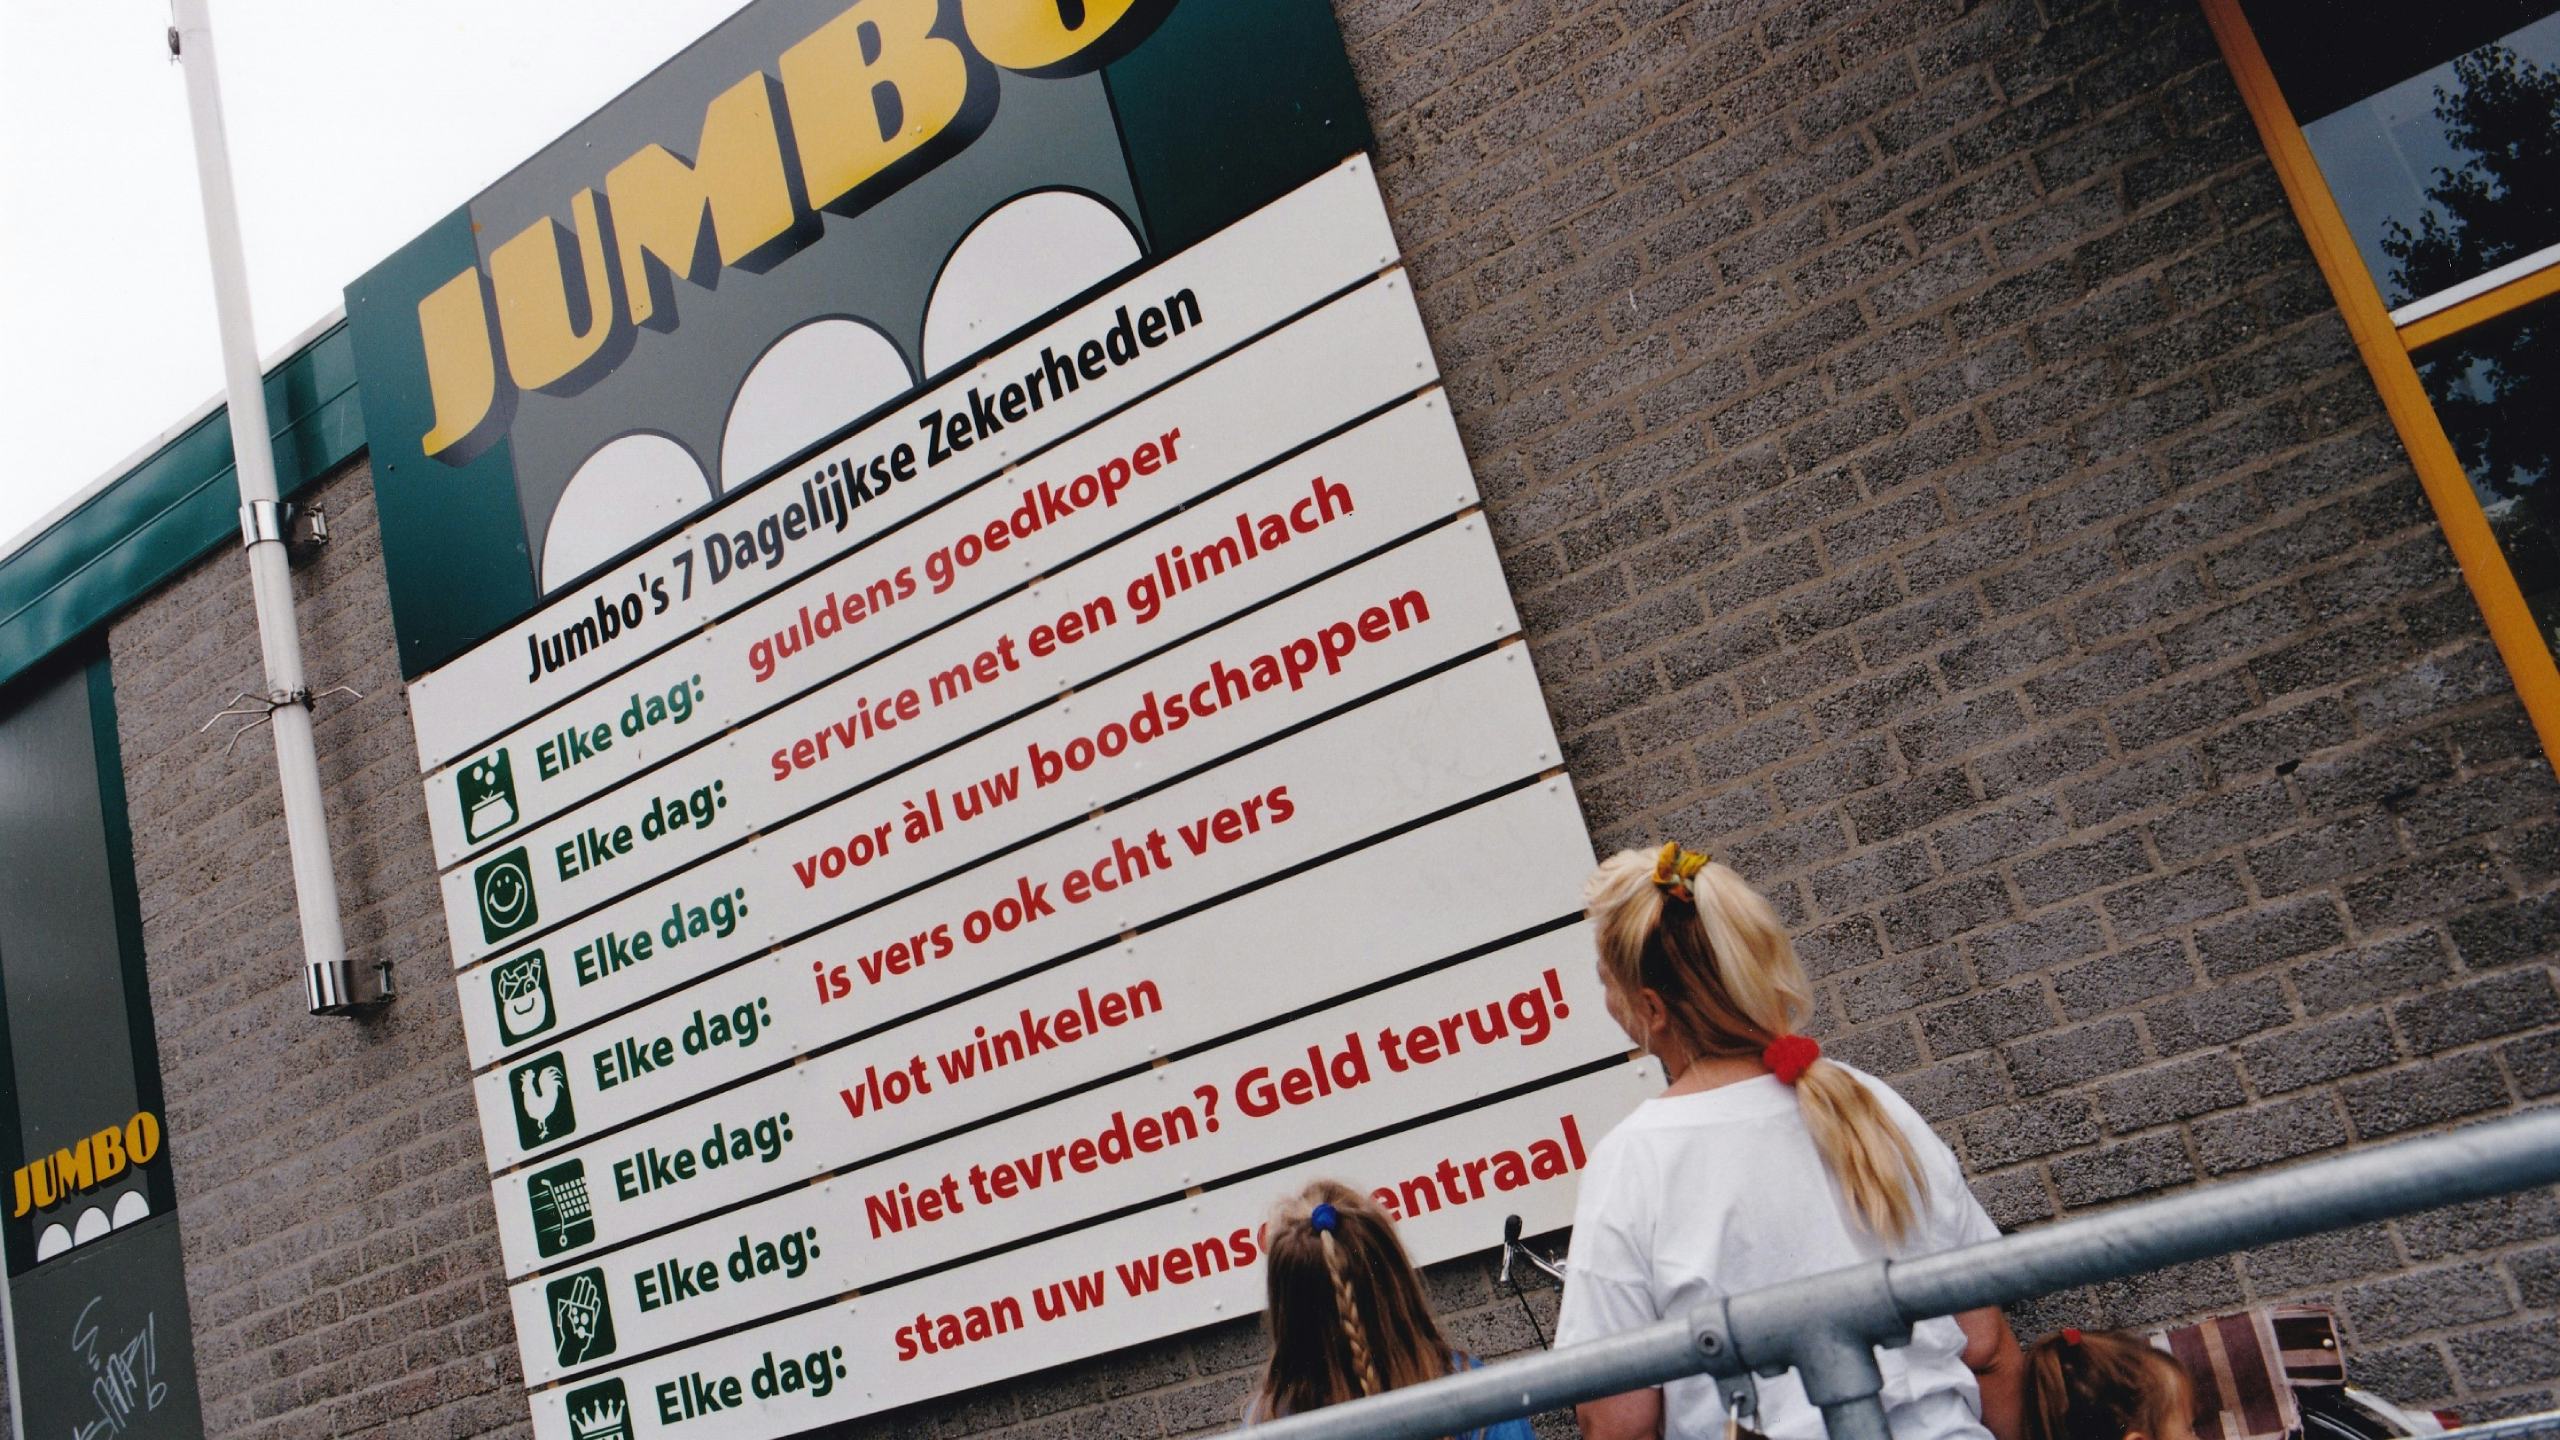 Jumbo in Den Bosch was de eerste supermarkt waar de Zeven Zekerheden werden gelanceerd. Foto: Voermans van Bree